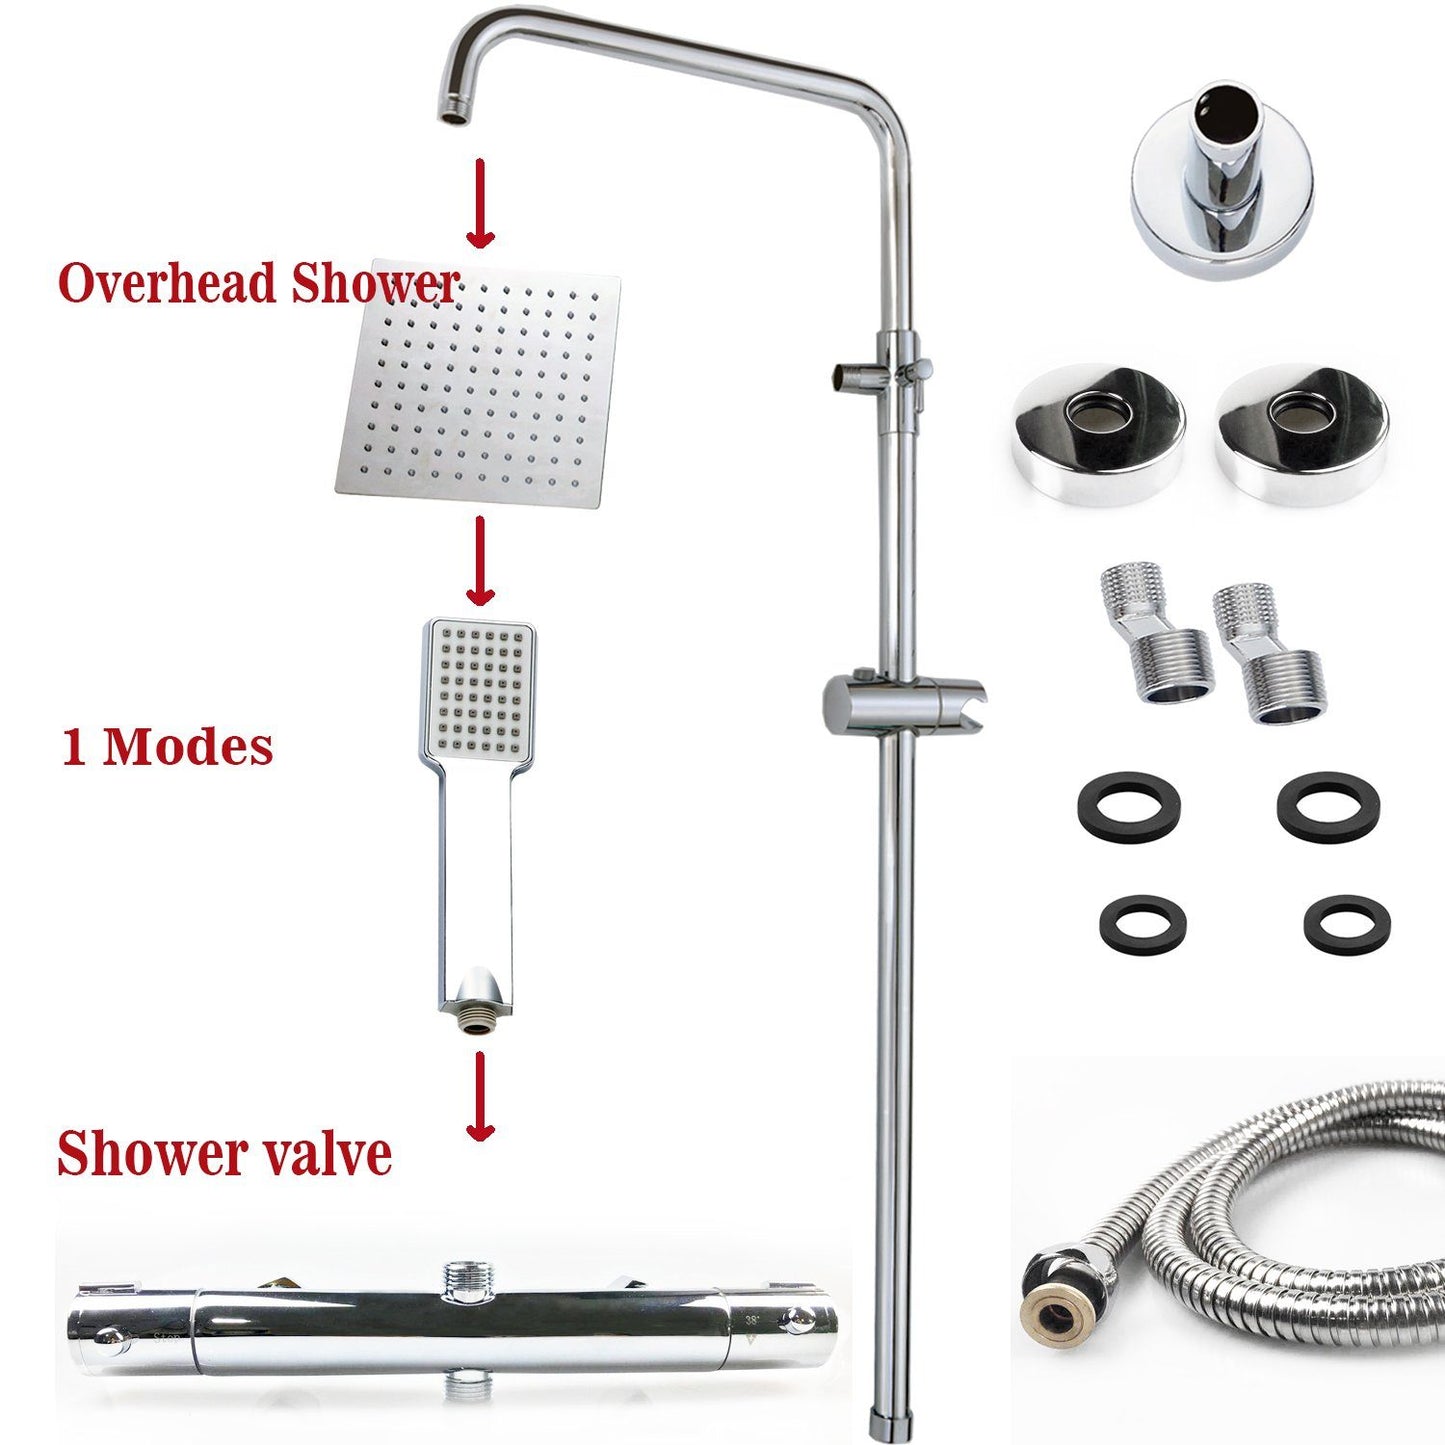 Duschsystem mit Thermostat und Handbrause Regendusche, Höhe 85-125 cm, Komplett-Set, mit 360° drehenbarem Regenduschkopf und höhenverstellbar Duschstange